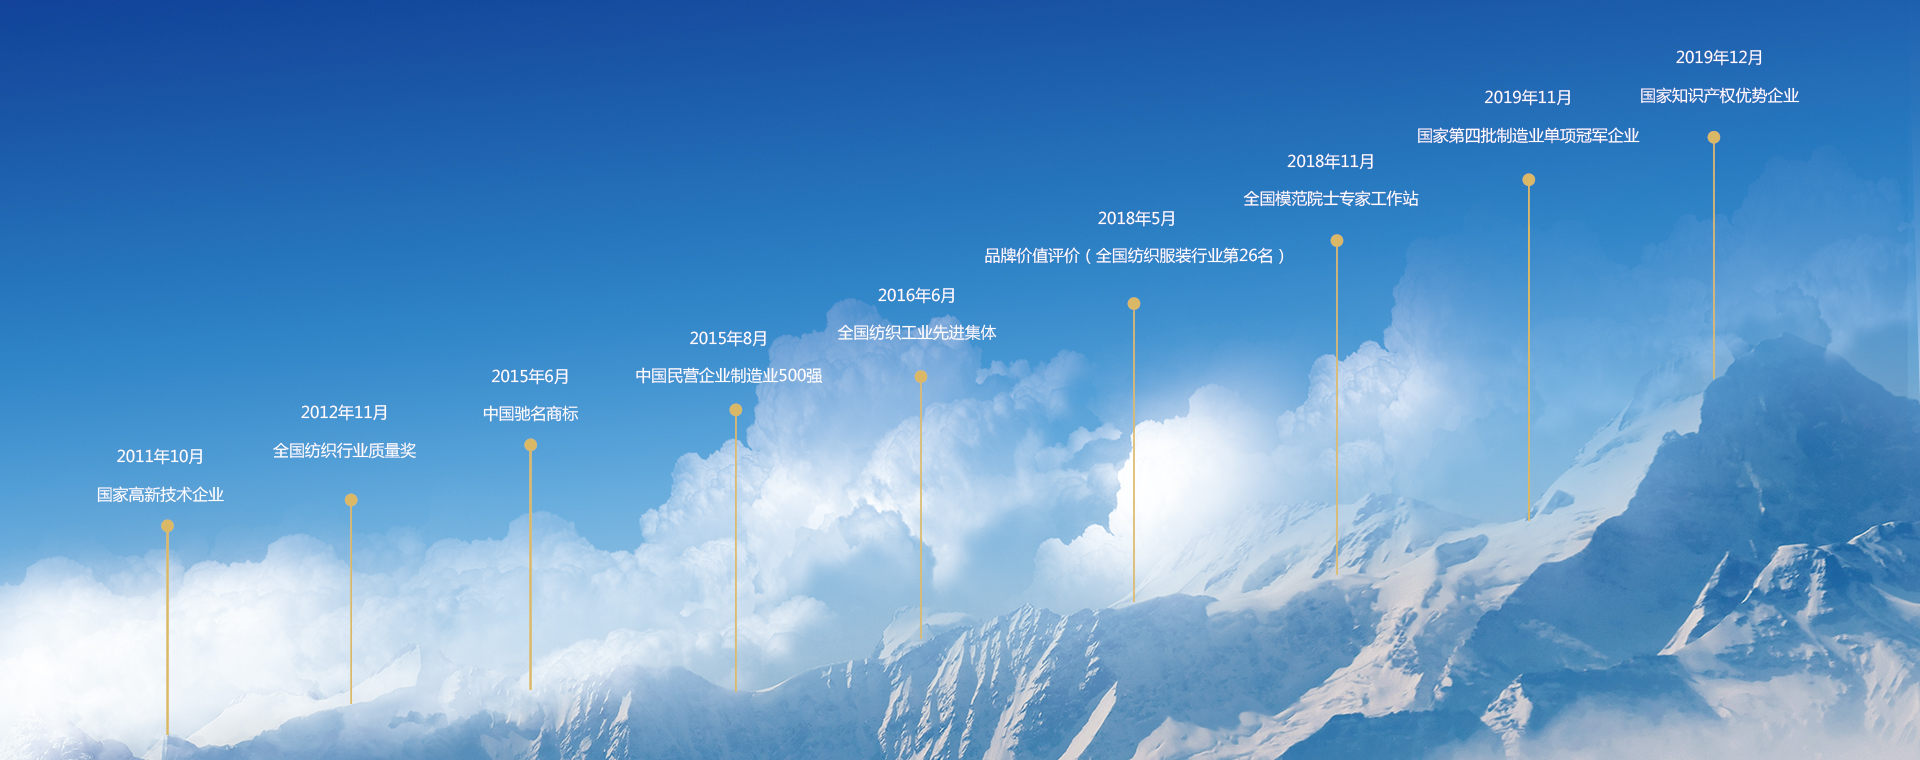 关于为您解答ku游娱乐备用网址列表线路一
(今日最新解答)的相关图片